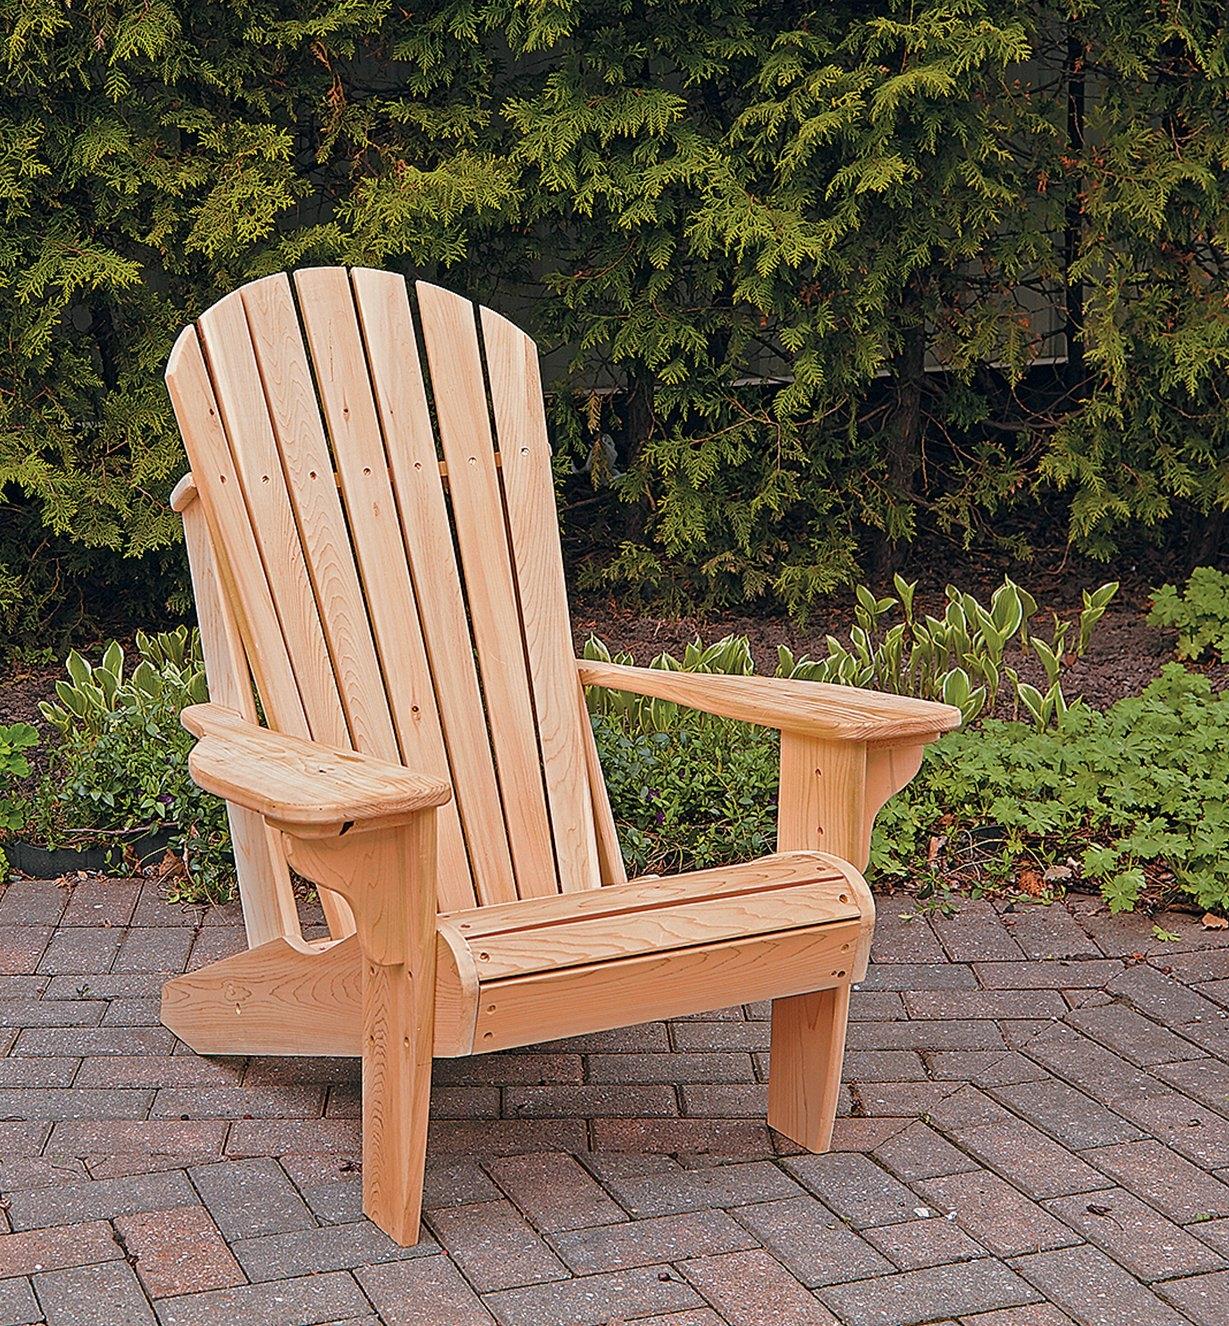 Adirondack Plus Chair Footstool Plan Lee Valley Tools